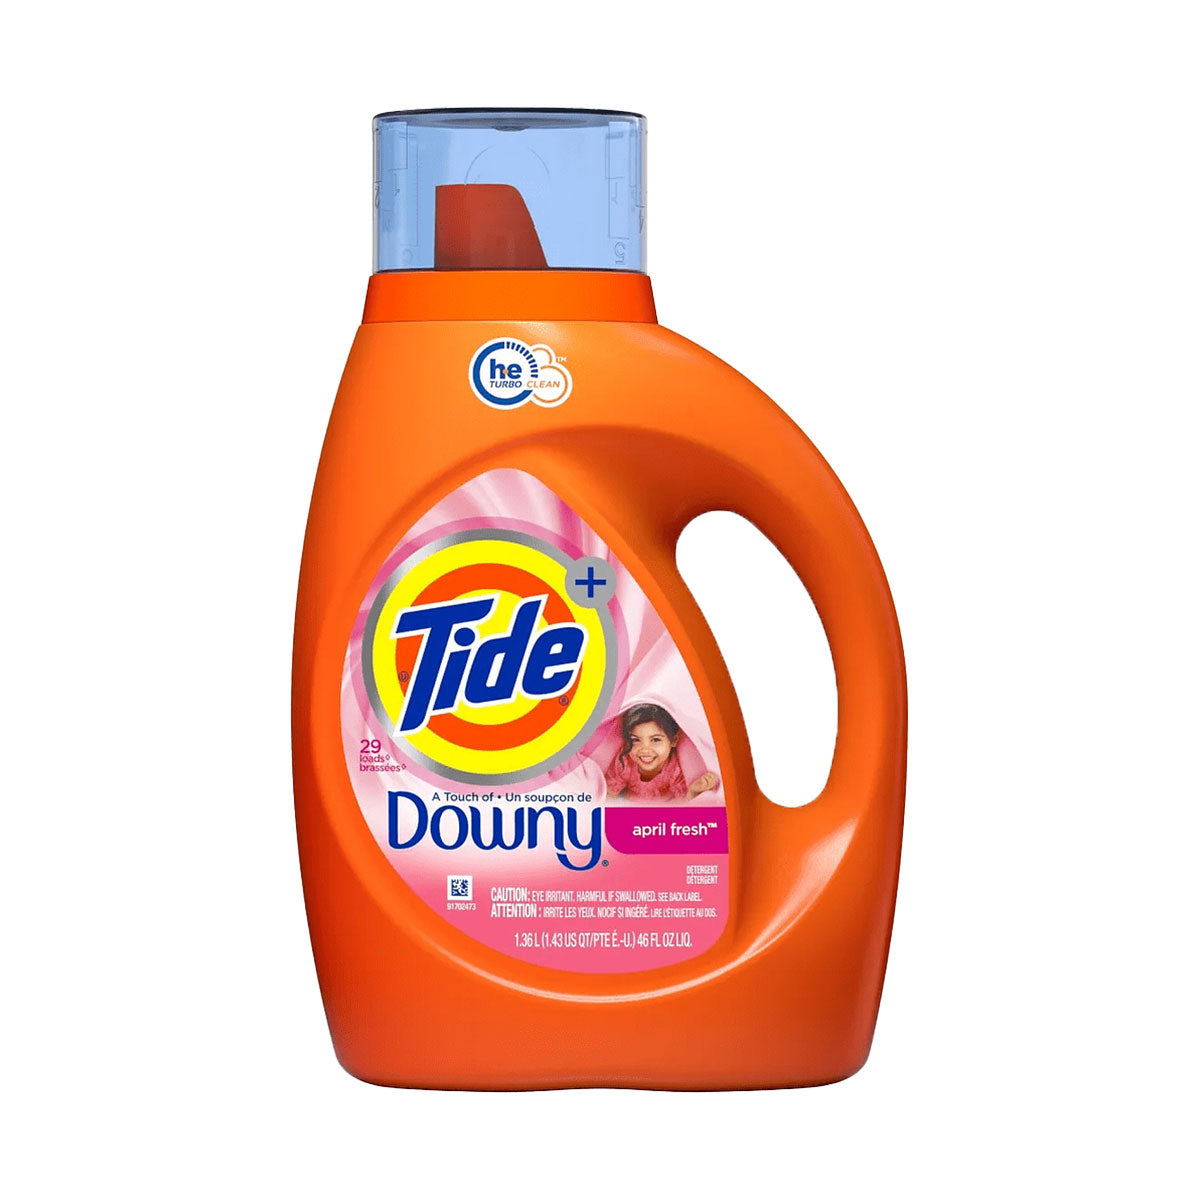 Detergente líquido para ropa Tide Plus Orange con un toque de Downy April Fresh 1,36 litros (32 cargas)